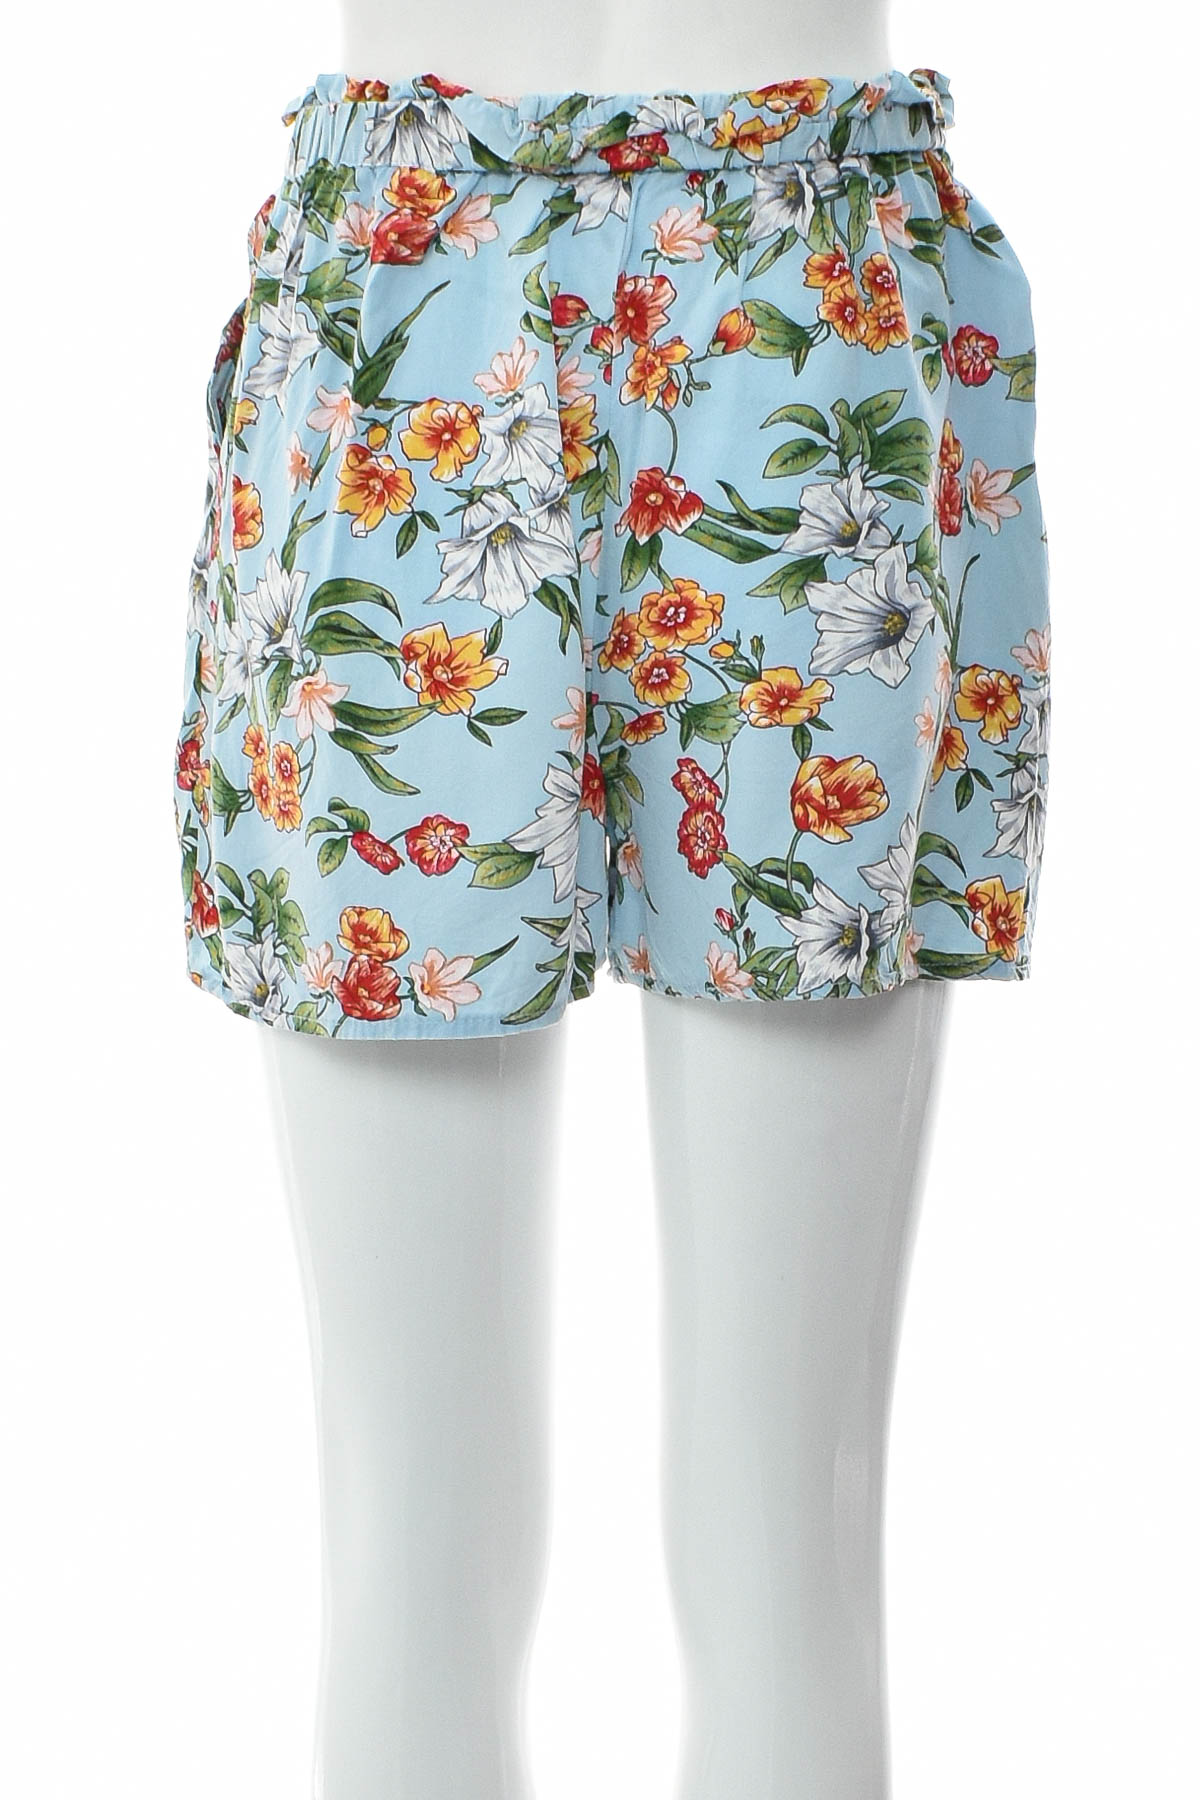 Female shorts - AMISU - 1